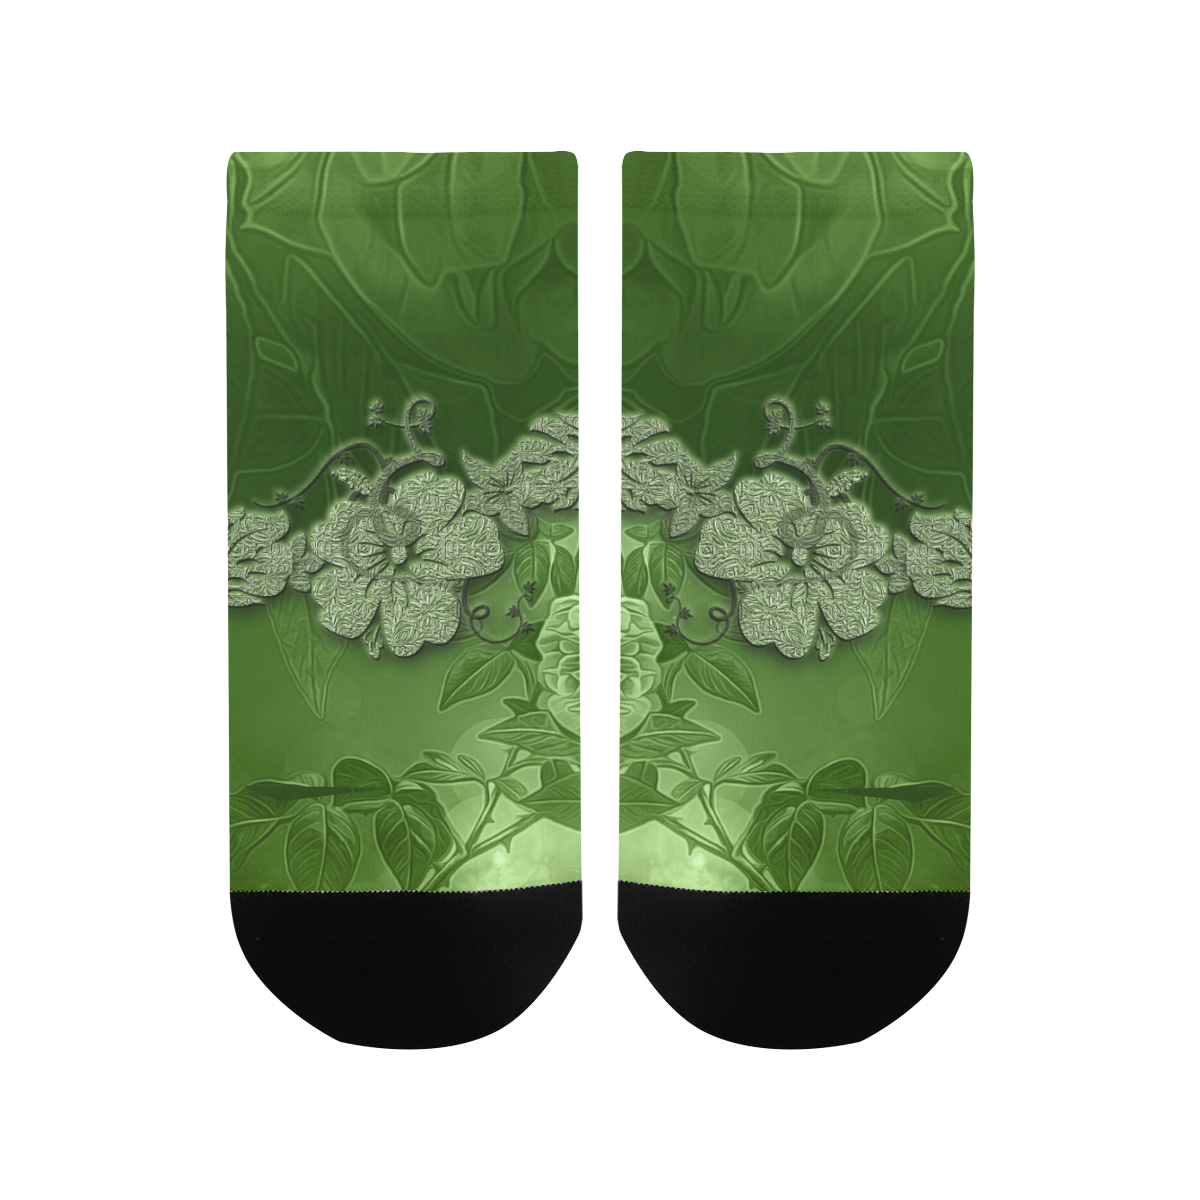 Wonderful green floral design Men's Ankle Socks